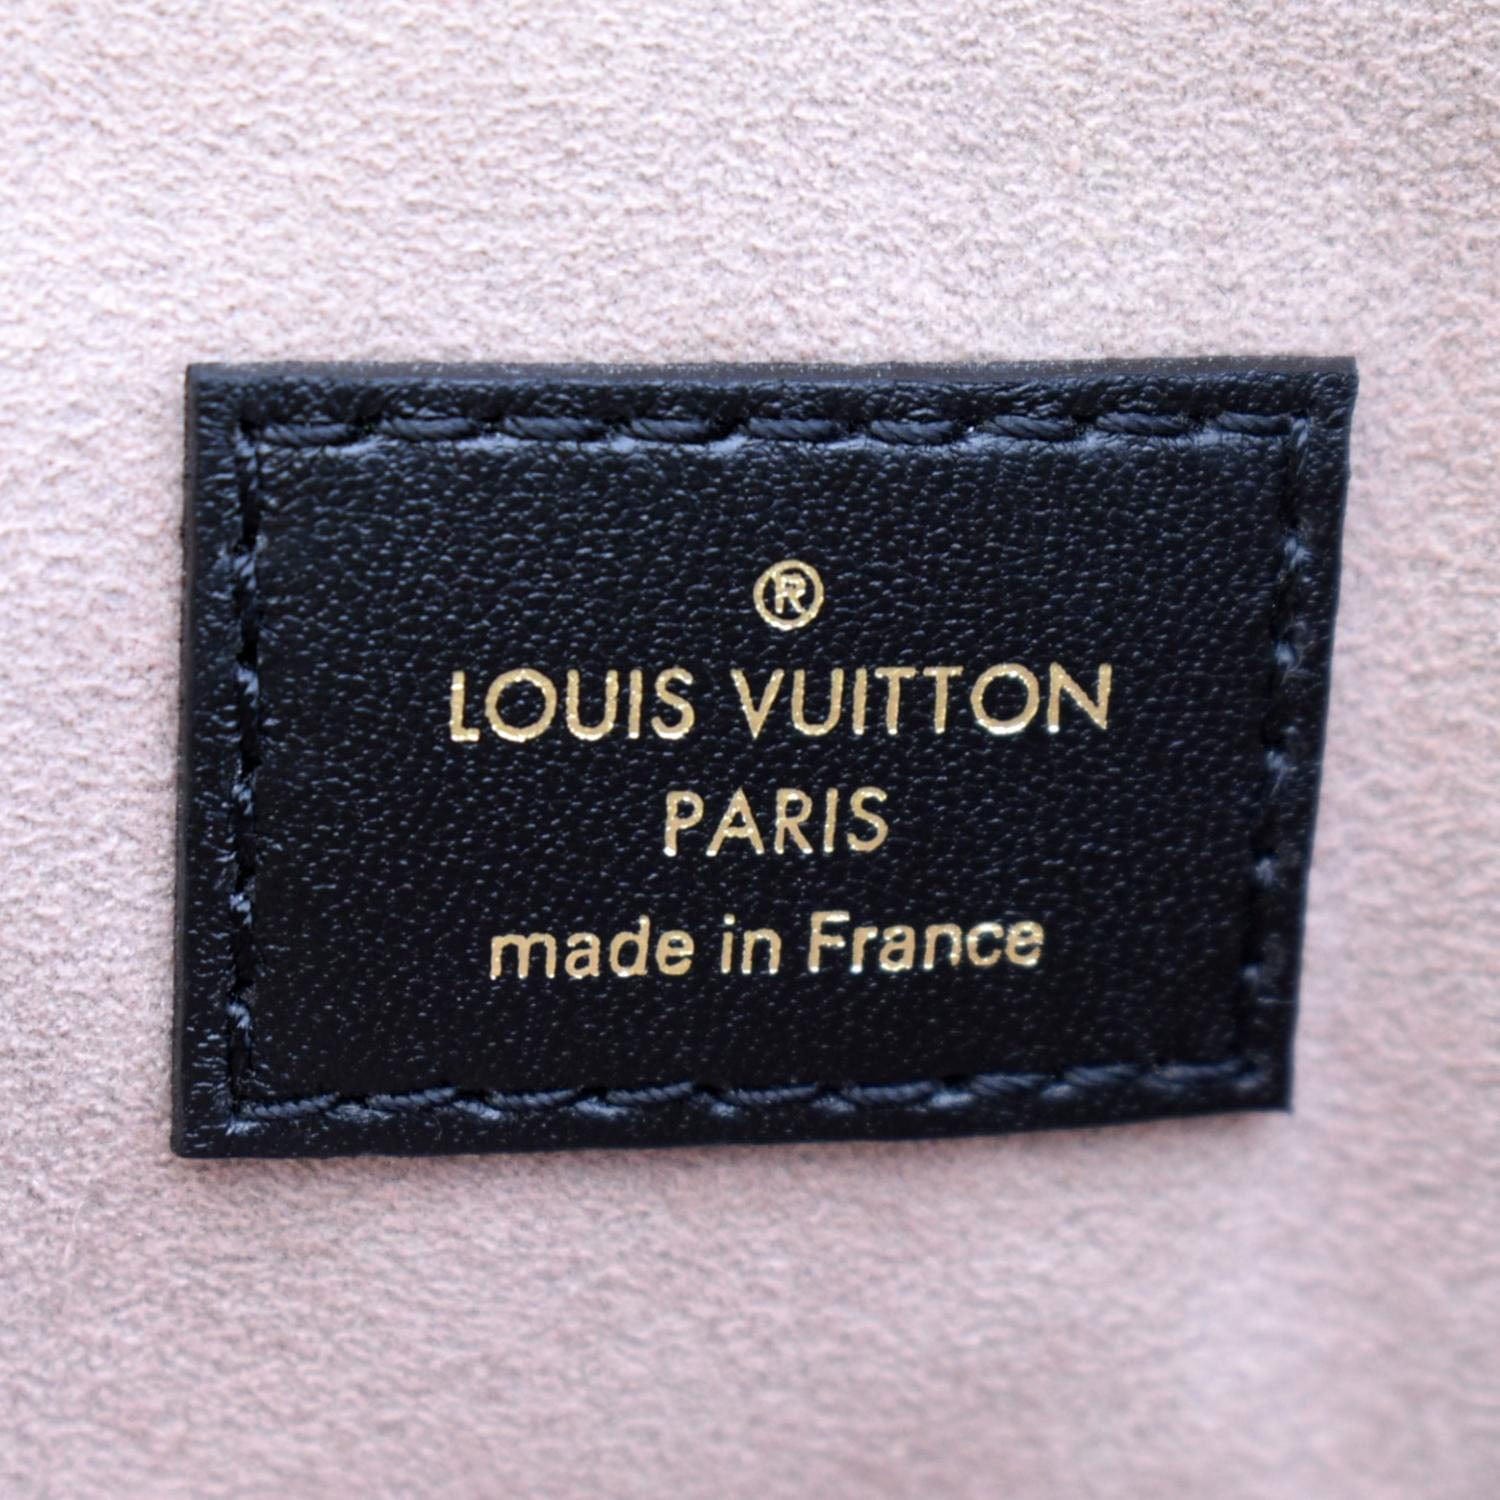 Shop Louis Vuitton Coussin pm (Coussin PM, M22397, M22398) by Mikrie